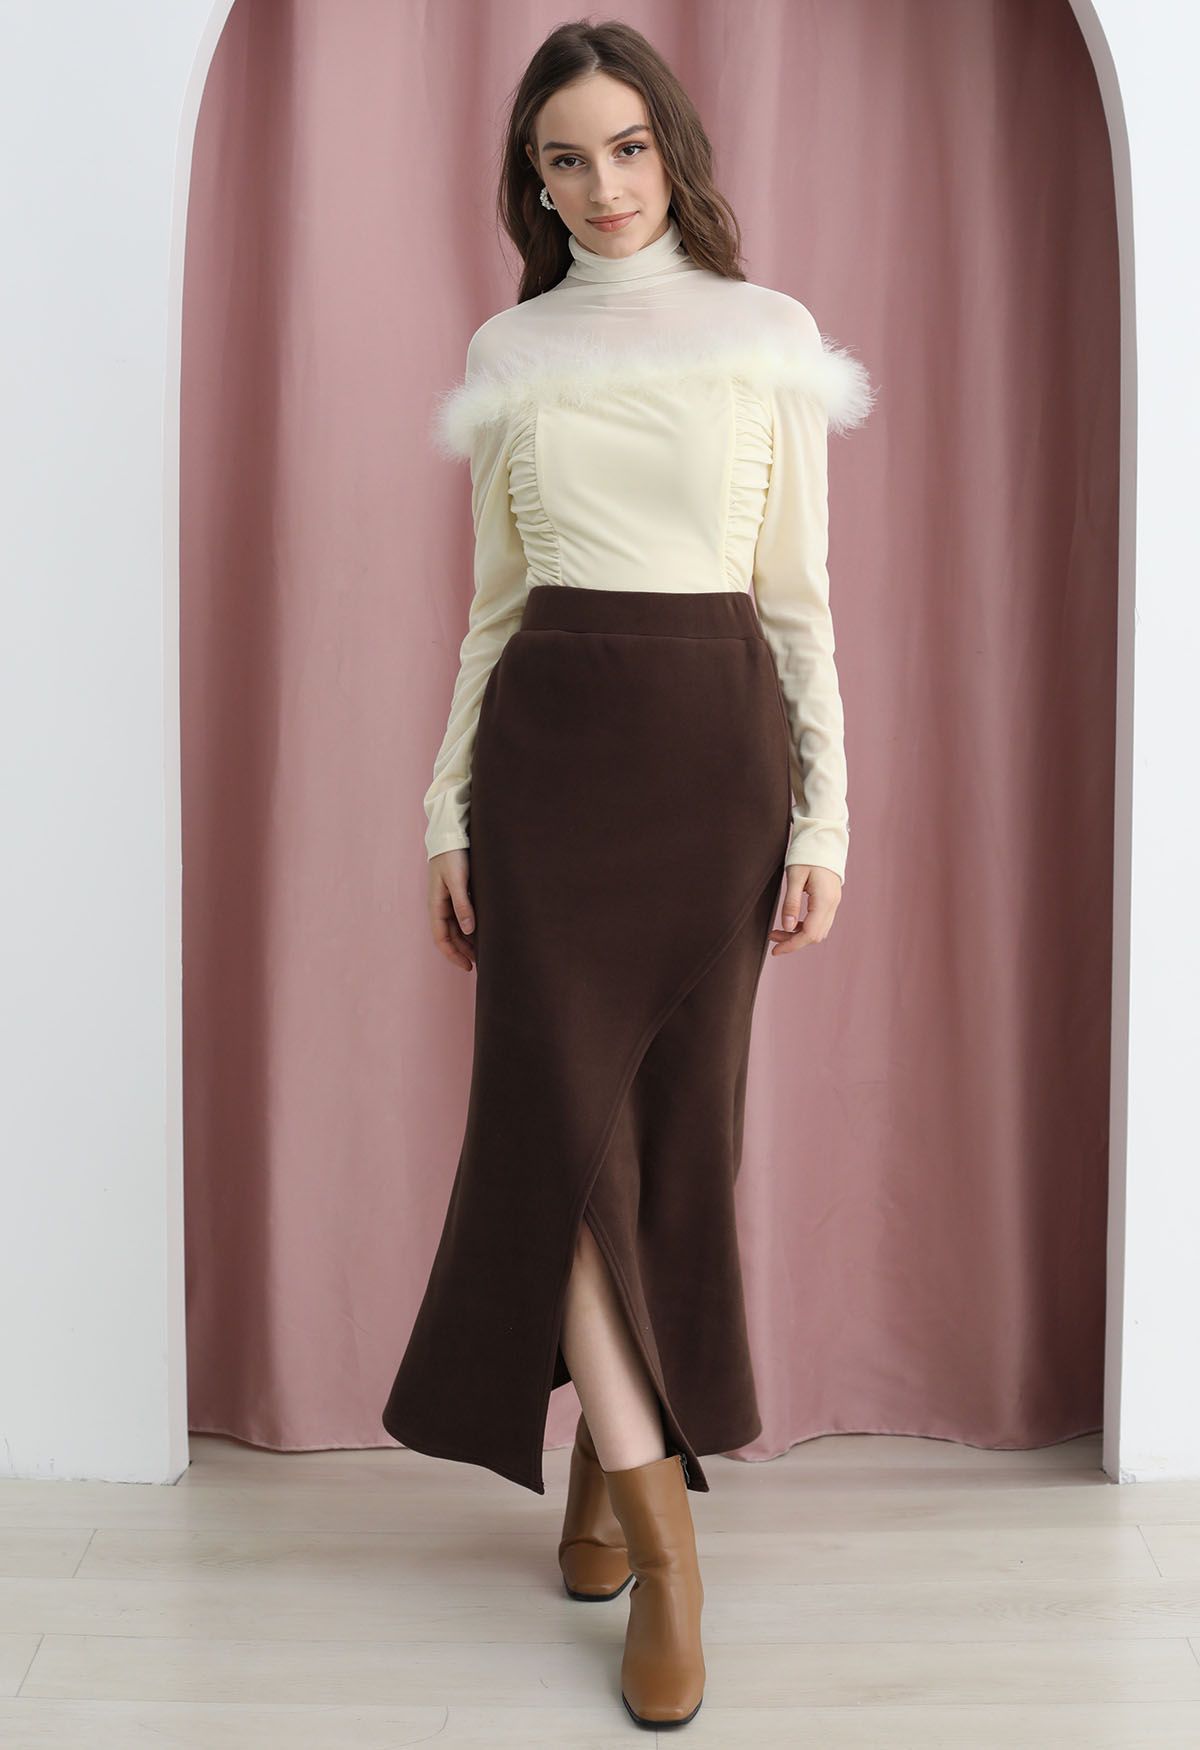 Falda sirena con solapa gruesa y cintura elástica en color marrón